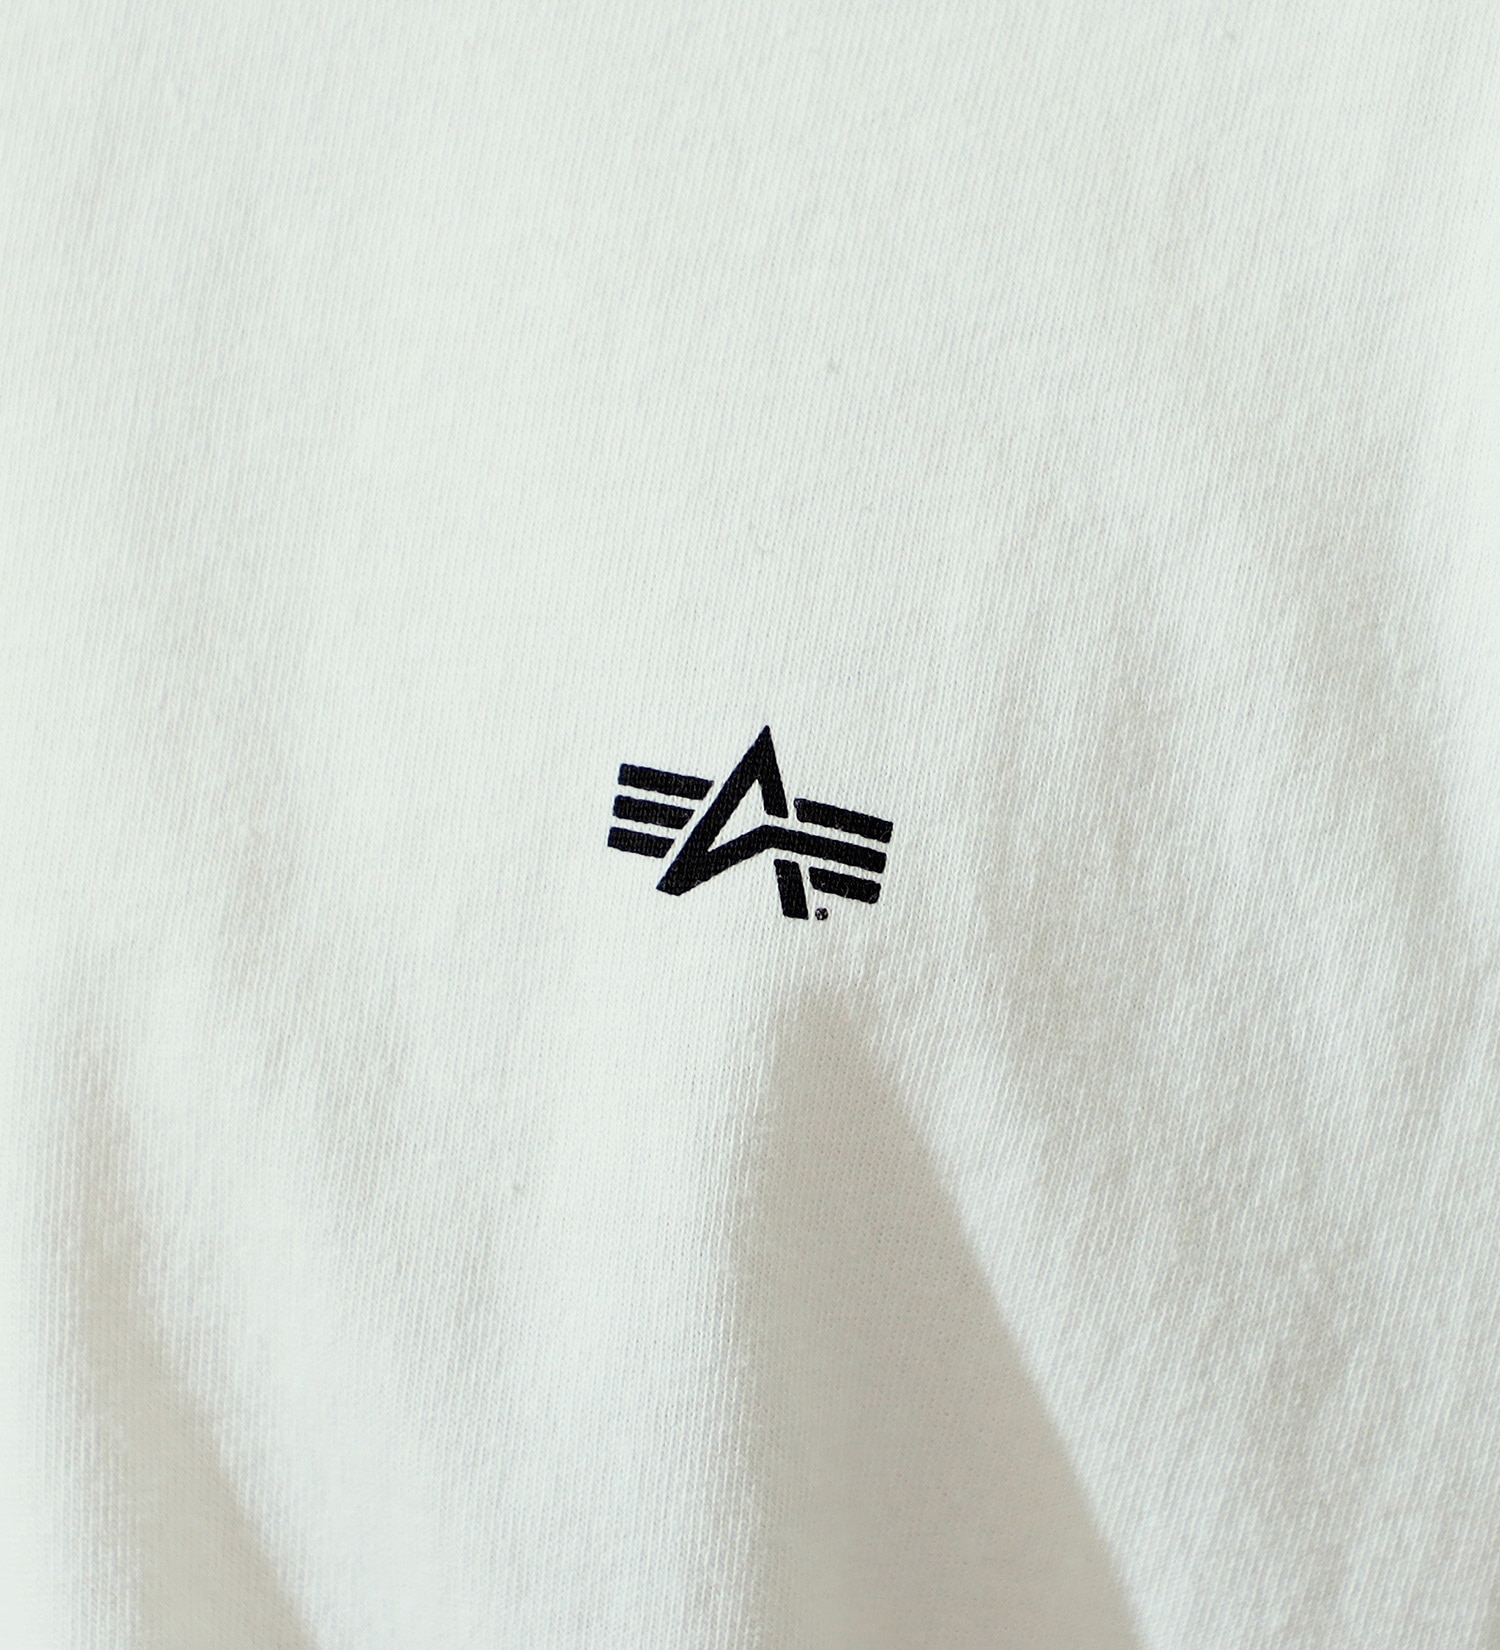 ALPHA(アルファ)のUSグラフィック プリントＴシャツ 半袖 (DISTORTION)|トップス/Tシャツ/カットソー/メンズ|ホワイト